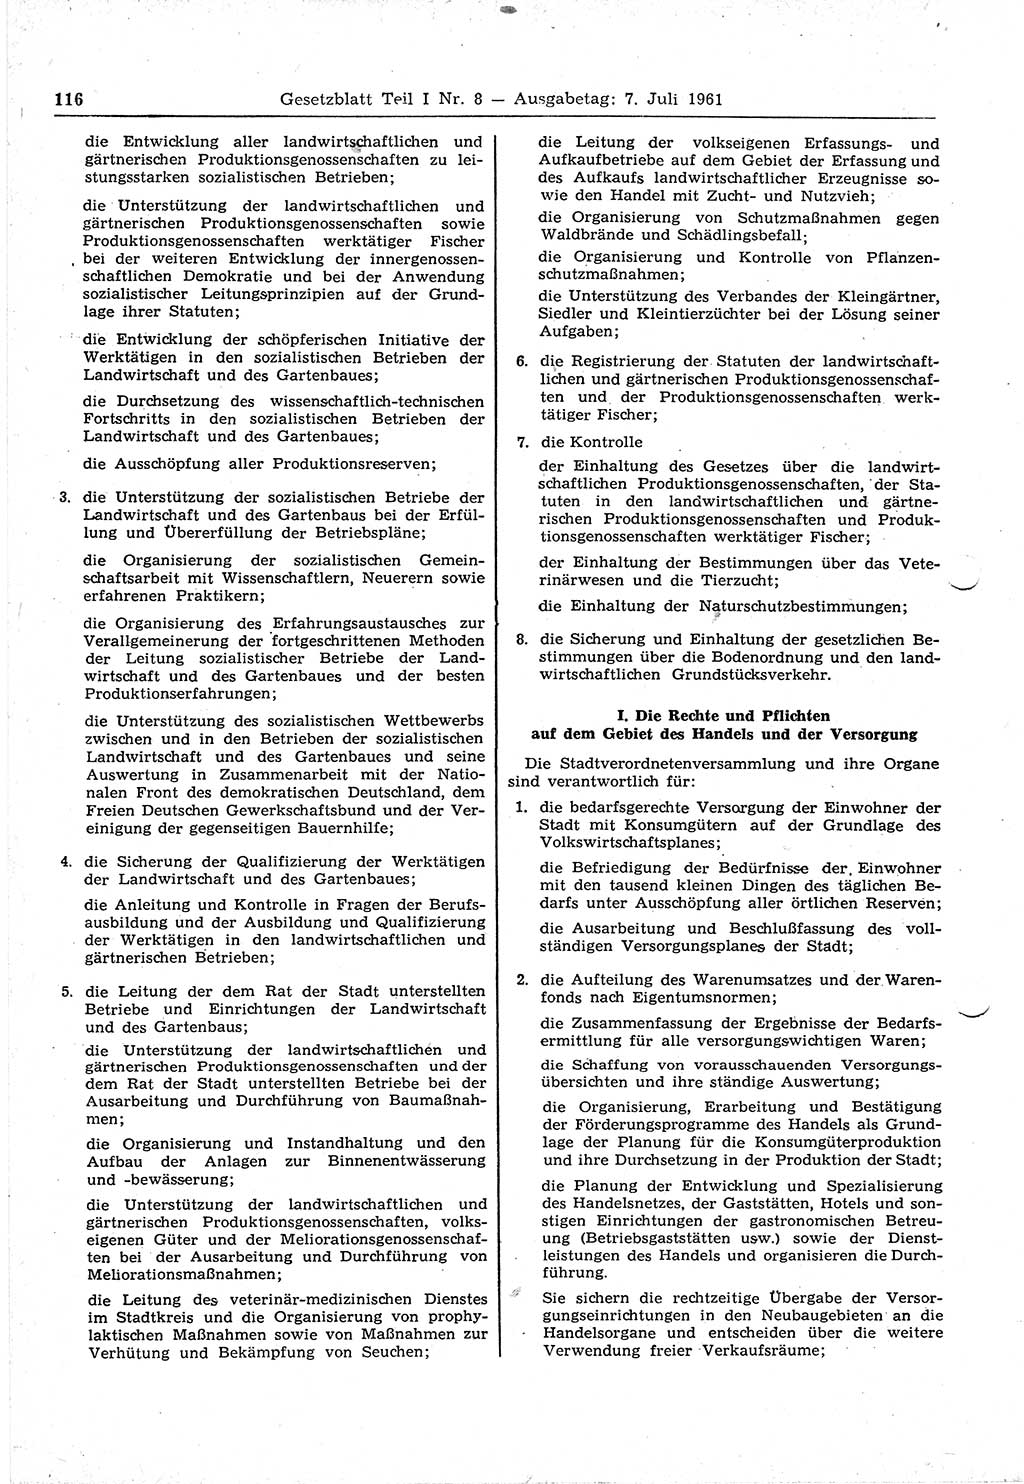 Gesetzblatt (GBl.) der Deutschen Demokratischen Republik (DDR) Teil Ⅰ 1961, Seite 116 (GBl. DDR Ⅰ 1961, S. 116)